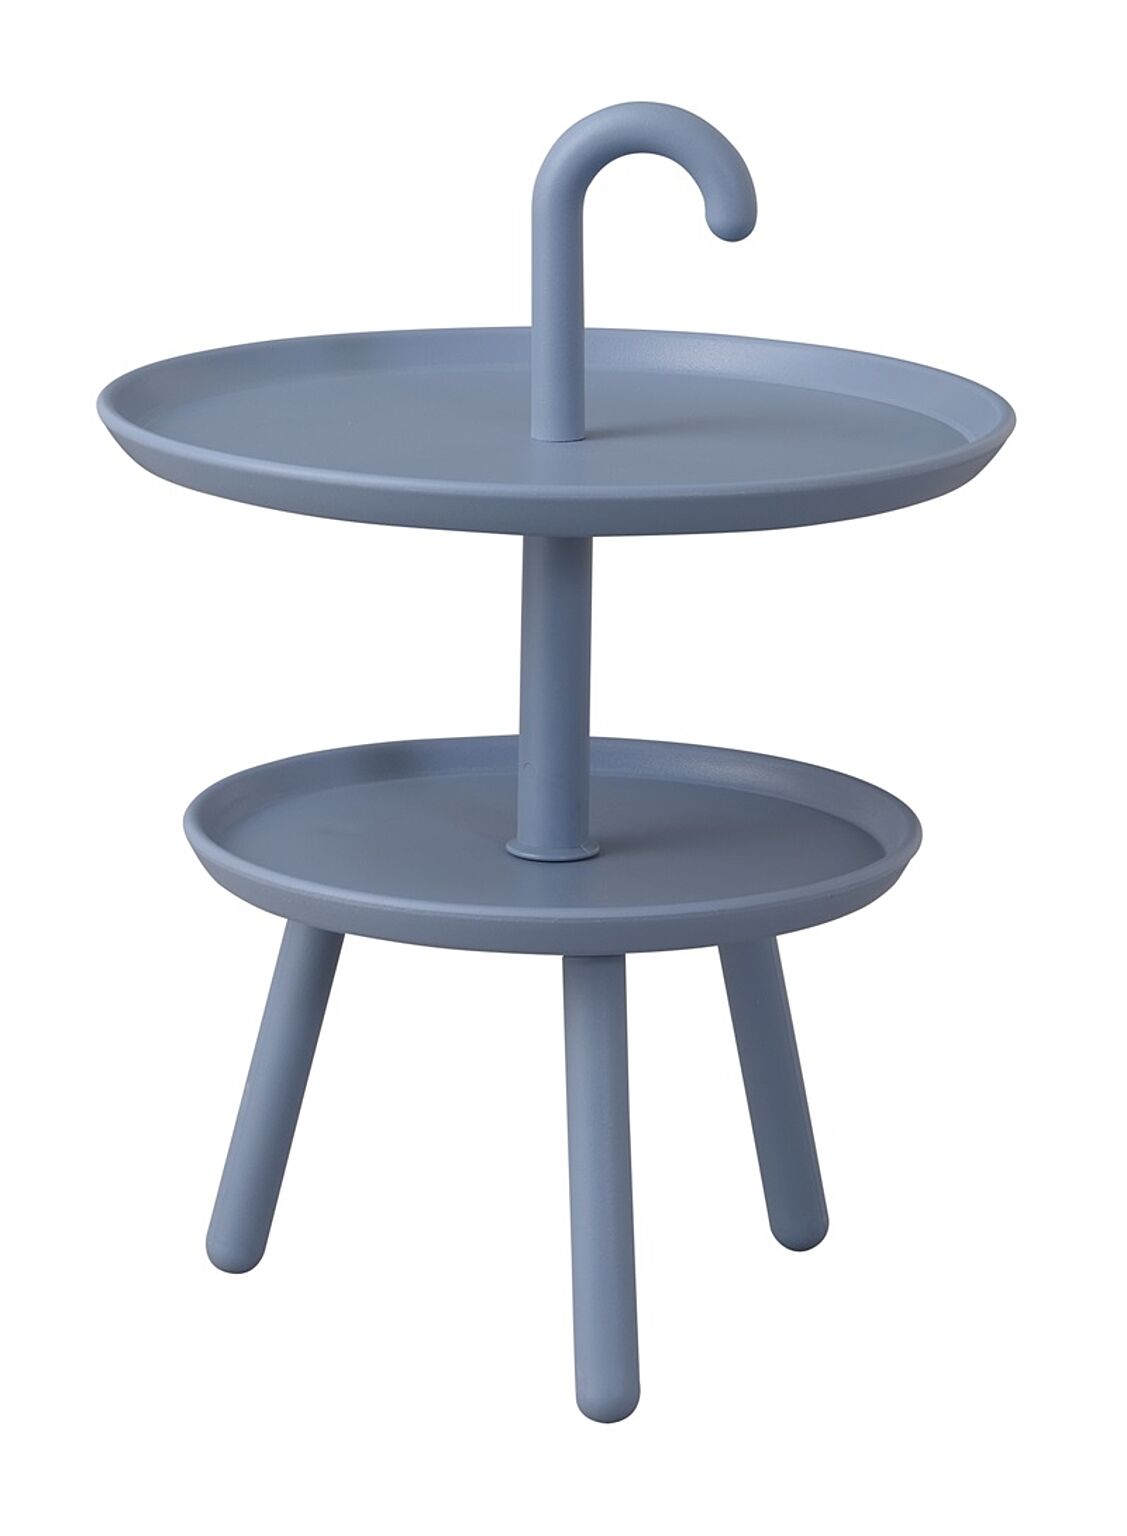 クッカ サイドテーブル φ42×H55 ブルー サイドテーブル ミニテーブル テーブル ナイトテーブル デザインテーブル かわいい 丸い 円形 シンプル 北欧 2段 全3色 ブルー オレンジ 